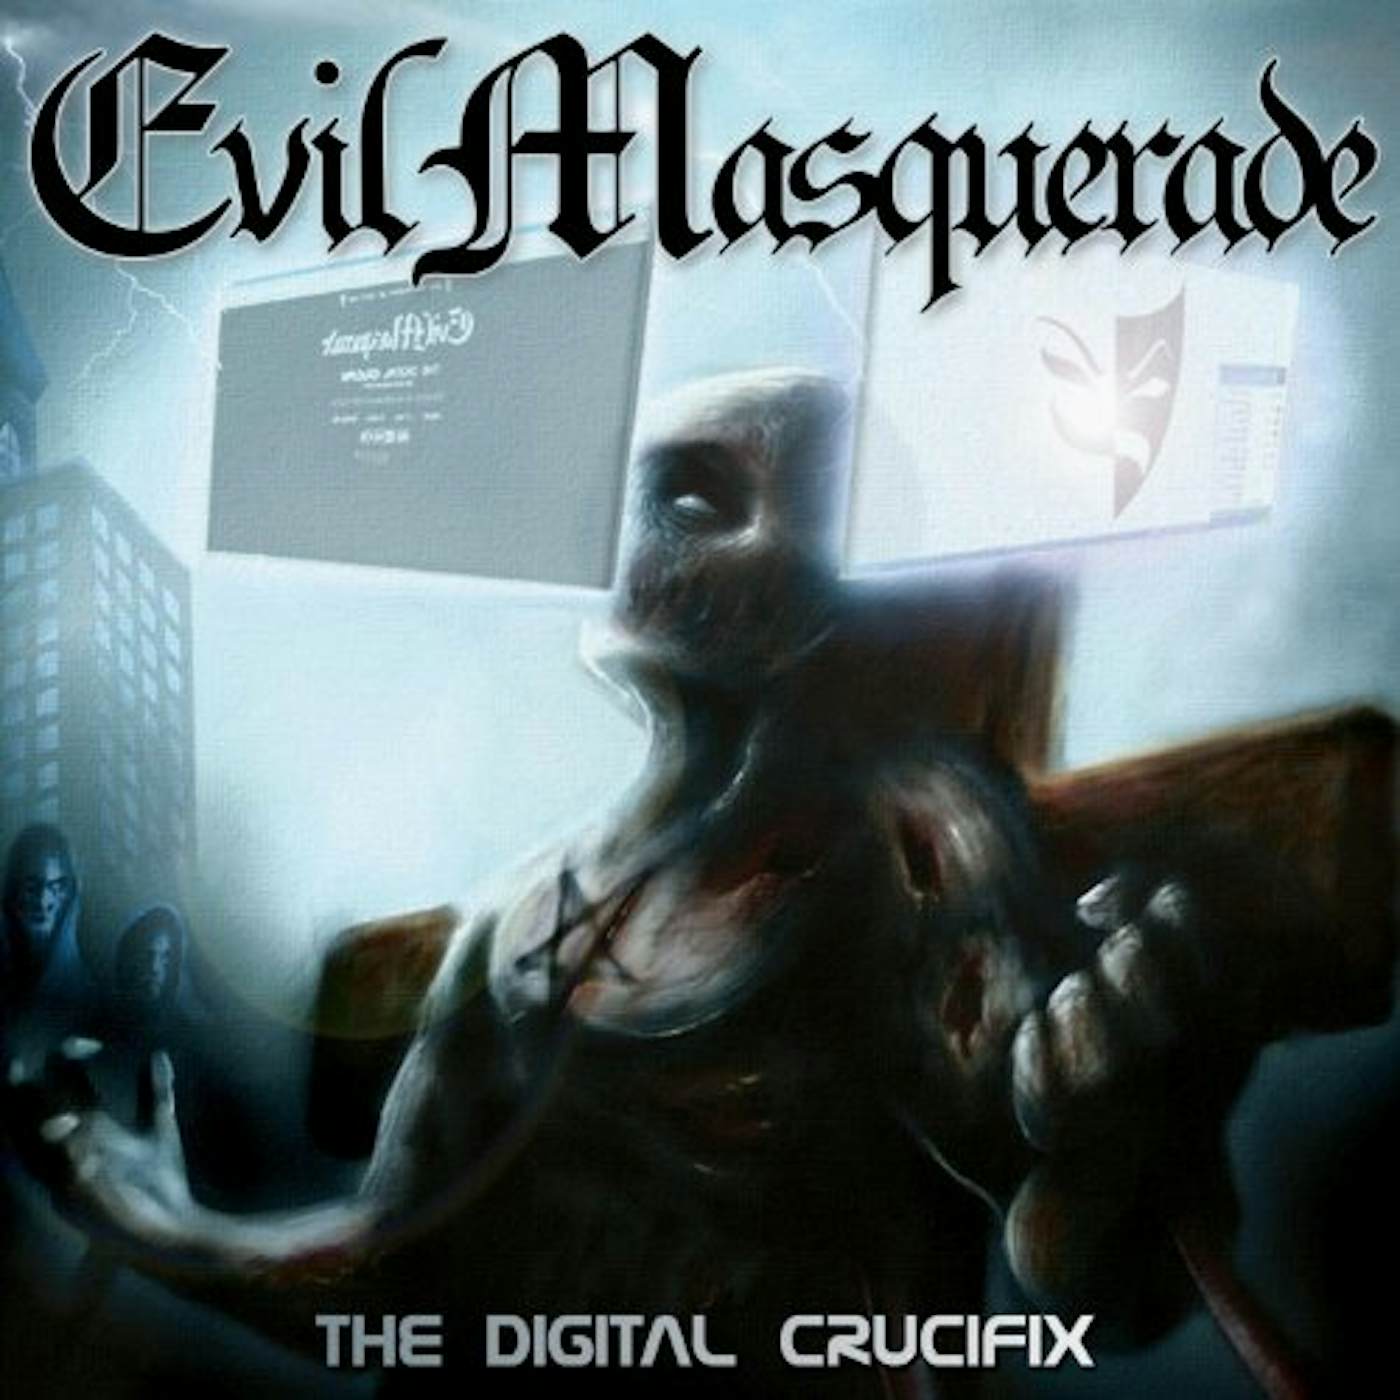 Evil Masquerade DIGITAL CRUCIFIX CD